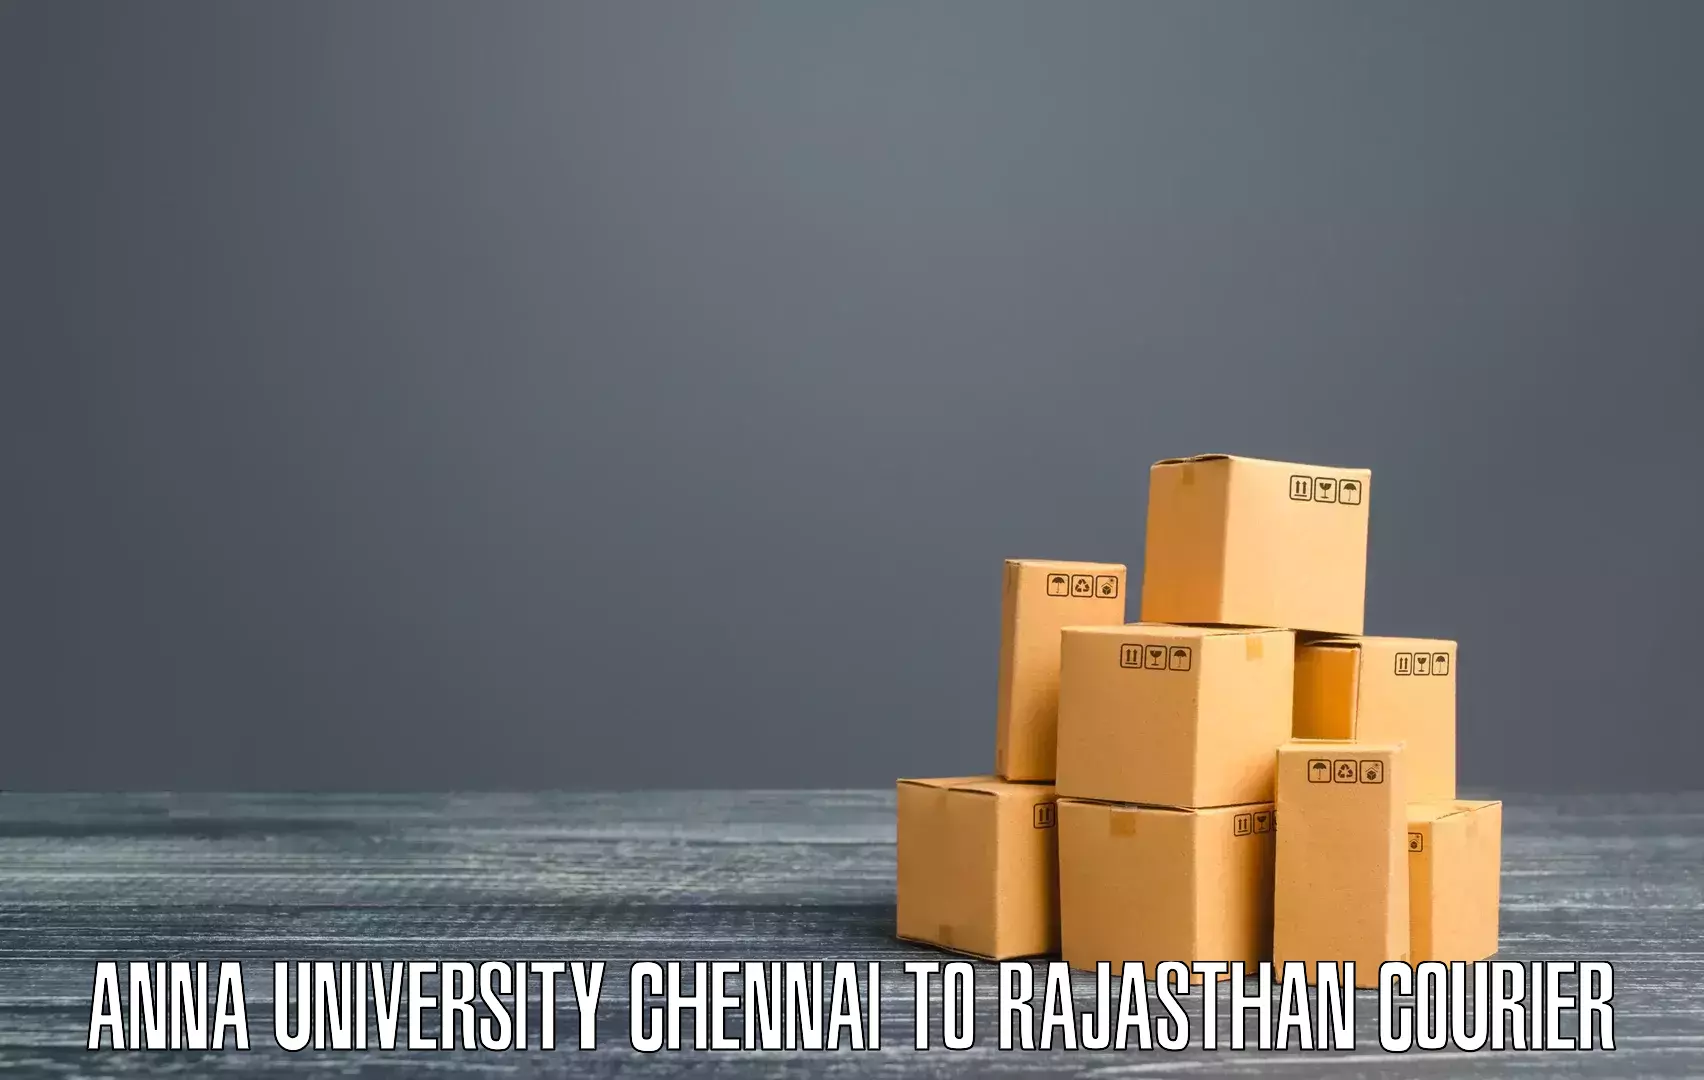 Next day courier Anna University Chennai to Pokhran